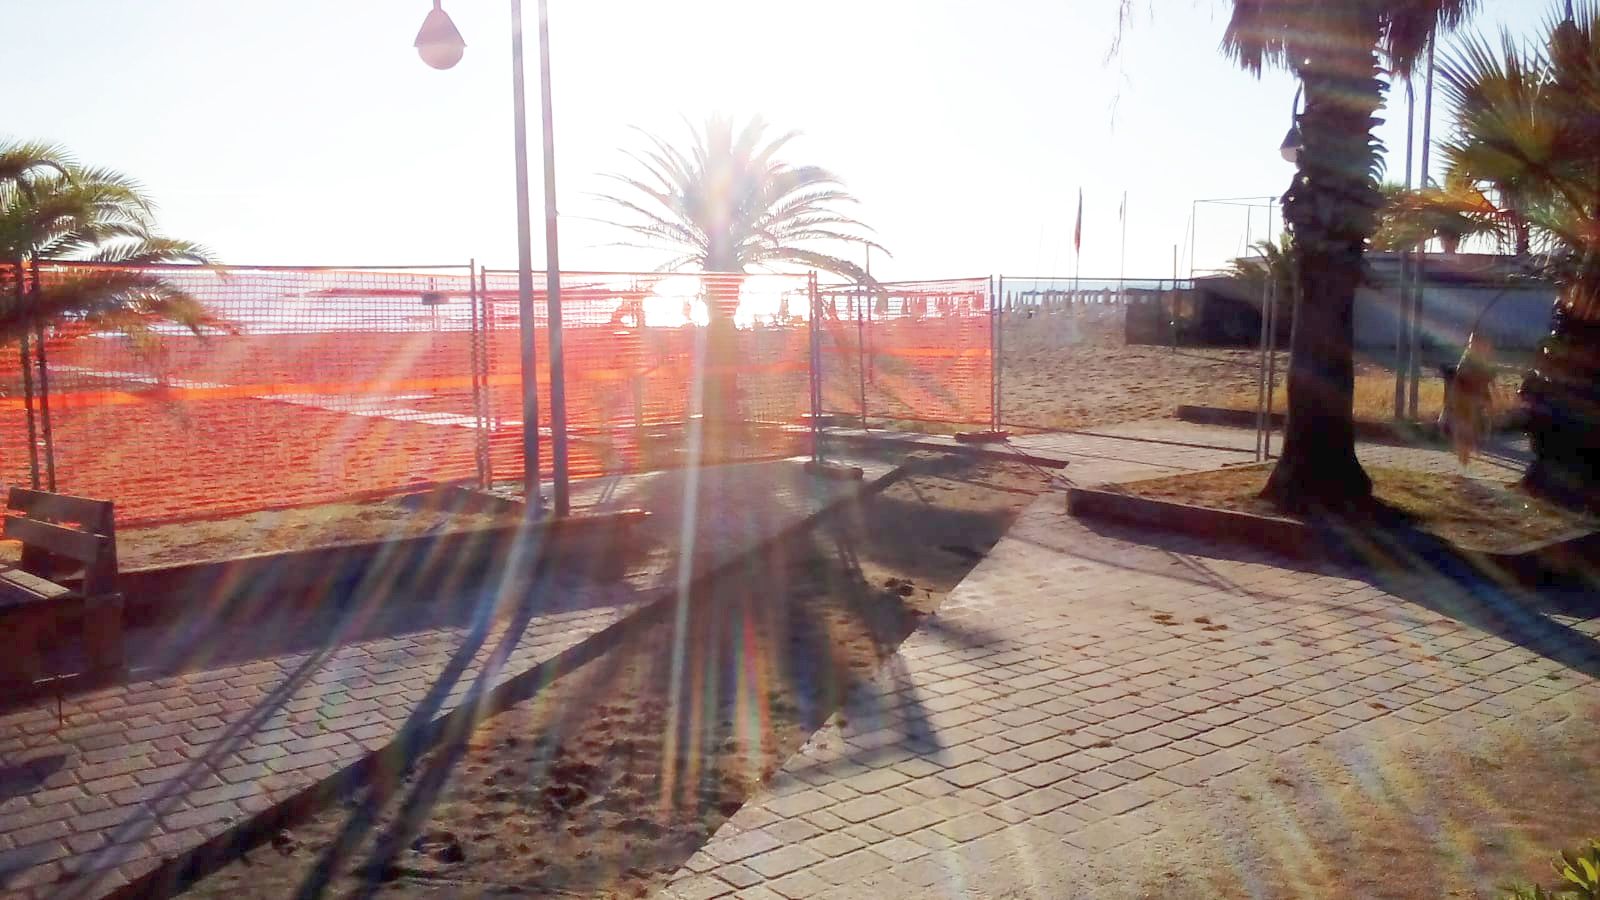 "Spiaggia per tutti", lavori in corso per rendere l'arenile accessibile